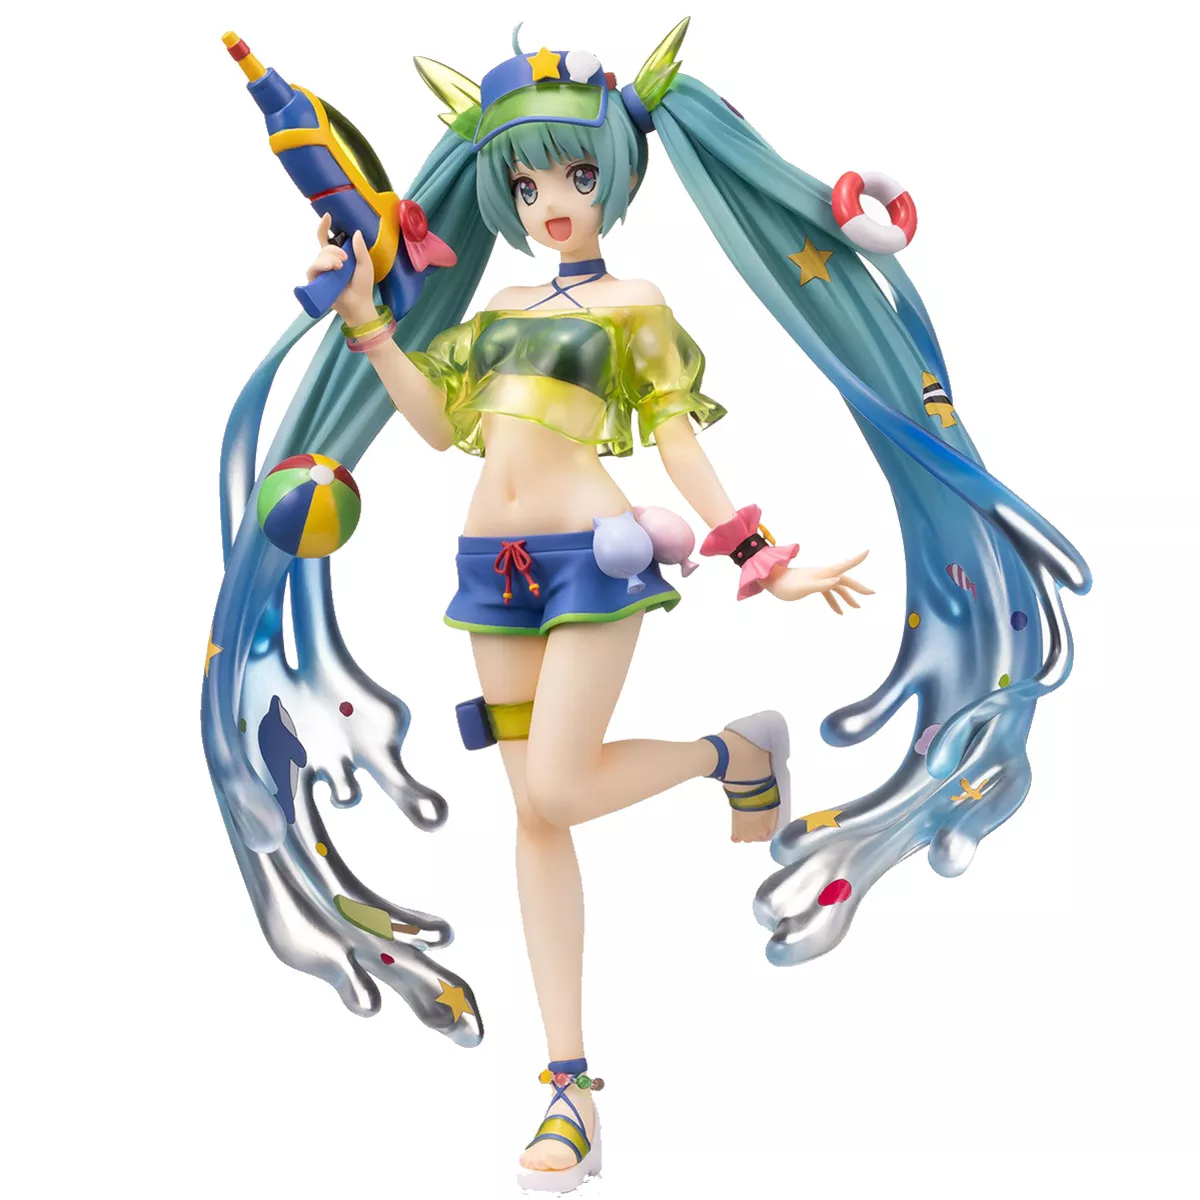 Action Figure Vocaloid Hatsune Miku figura spm verão pistola de água 22cm pvc anime estatueta modelo brinquedos para meninas presente 2